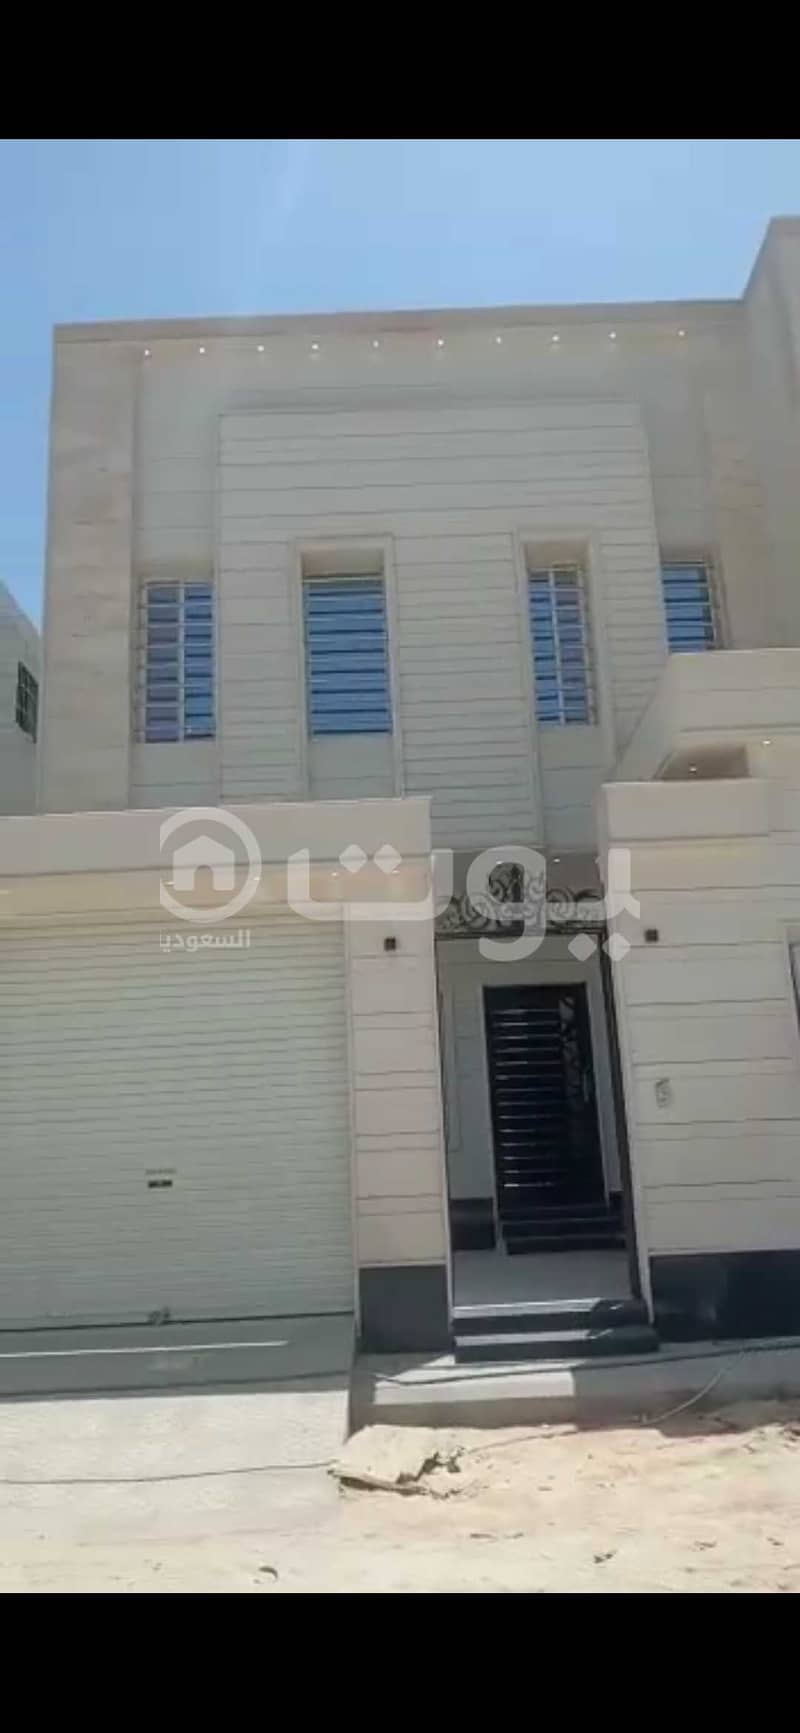 Villa For Sale with 2 apartments In Al Qadisiyah, East of Riyadh